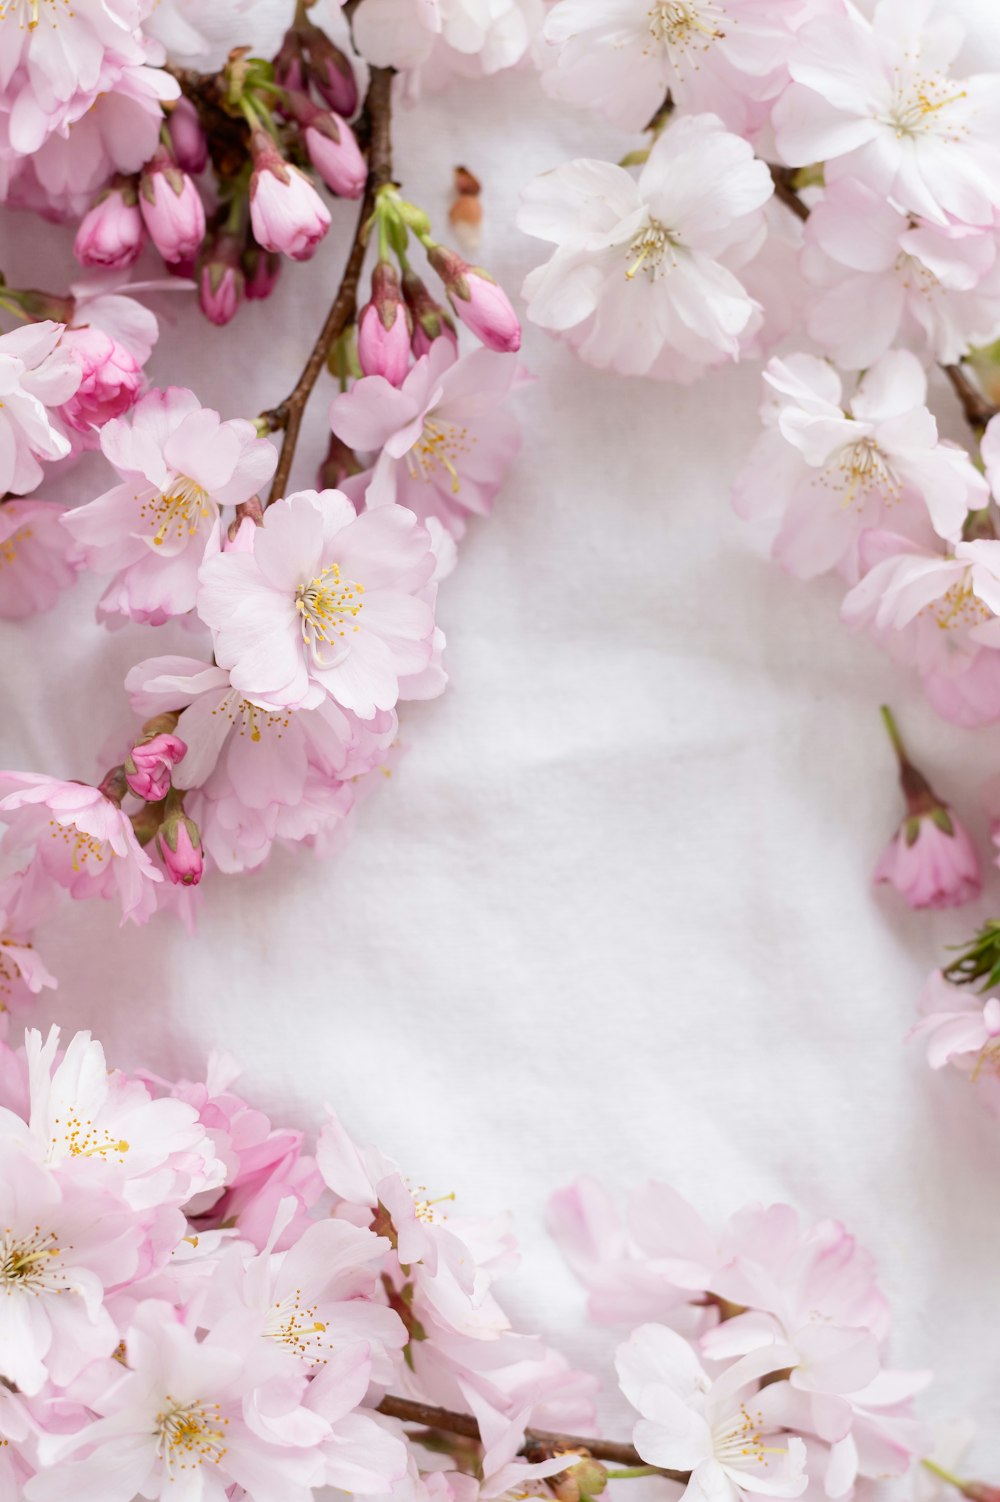 Hình ảnh hoa hồng trắng và hồng trên nền vải trắng tạo nên một sự kết hợp tuyệt đẹp và mềm mại. Những bông hoa được thiết kế cực kỳ tỉ mỉ và đẹp mắt sẽ khiến bạn có cảm giác như đang đứng giữa một vườn hoa thật đong đầy. Hãy xem ngay hình ảnh của chúng tôi để đắm mình trong vẻ đẹp ấy.